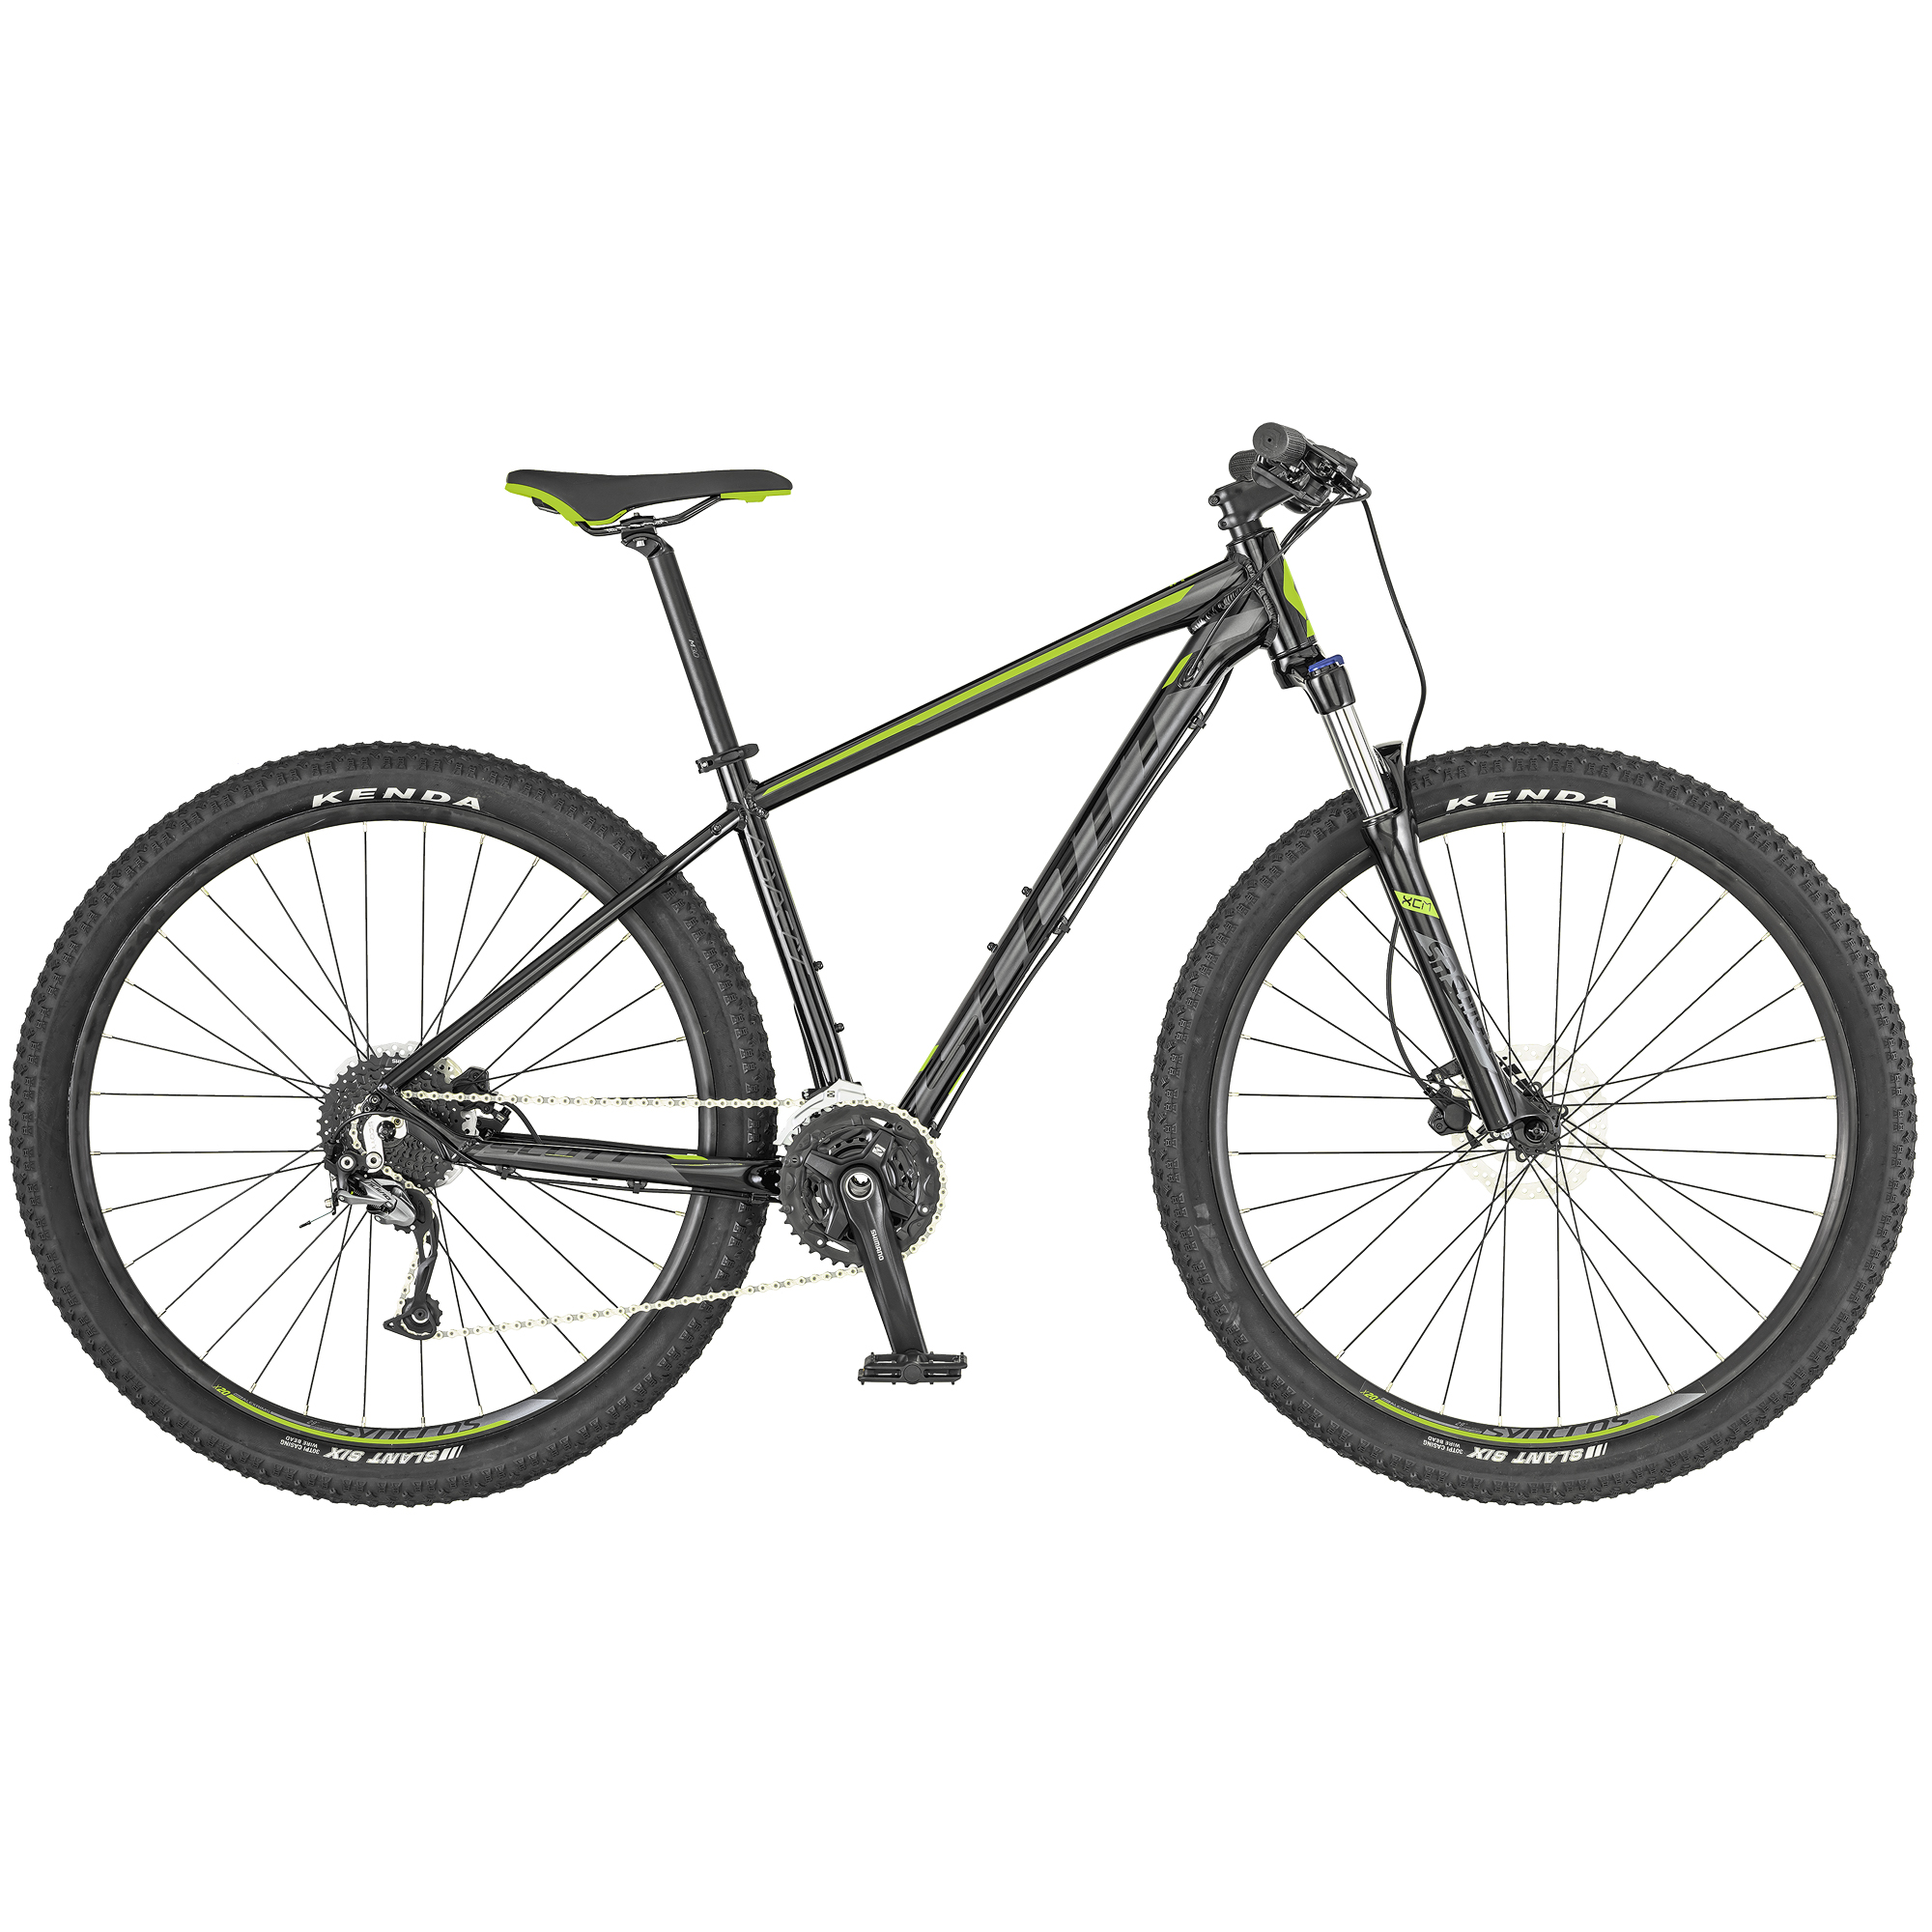 دوچرخه کوهستان اسکات مدل ASPECT 740-2019  سایز 27.5